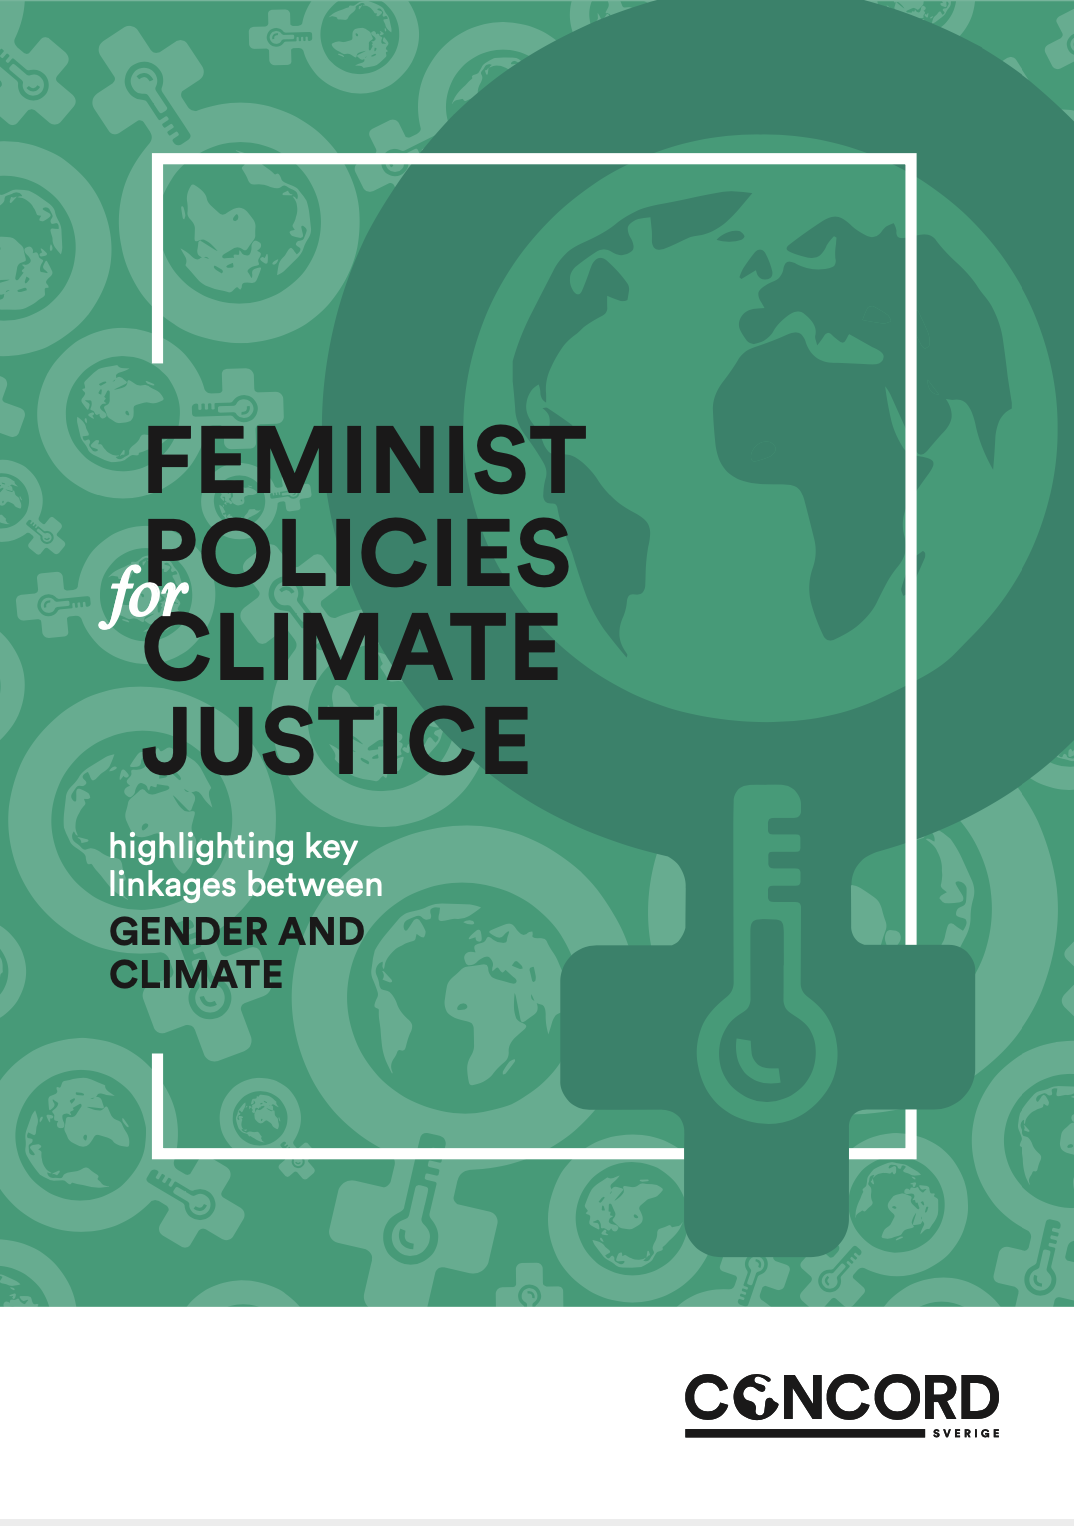 Framsidebild av rapporten Feminist policies for climate justice, en feministsymbol med en jordglob och en termometer i, med grönt färgfilter framför